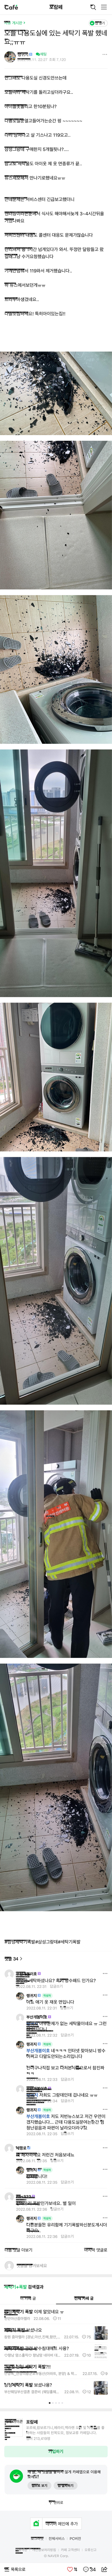 また爆発したというサムスン洗濯機jpg